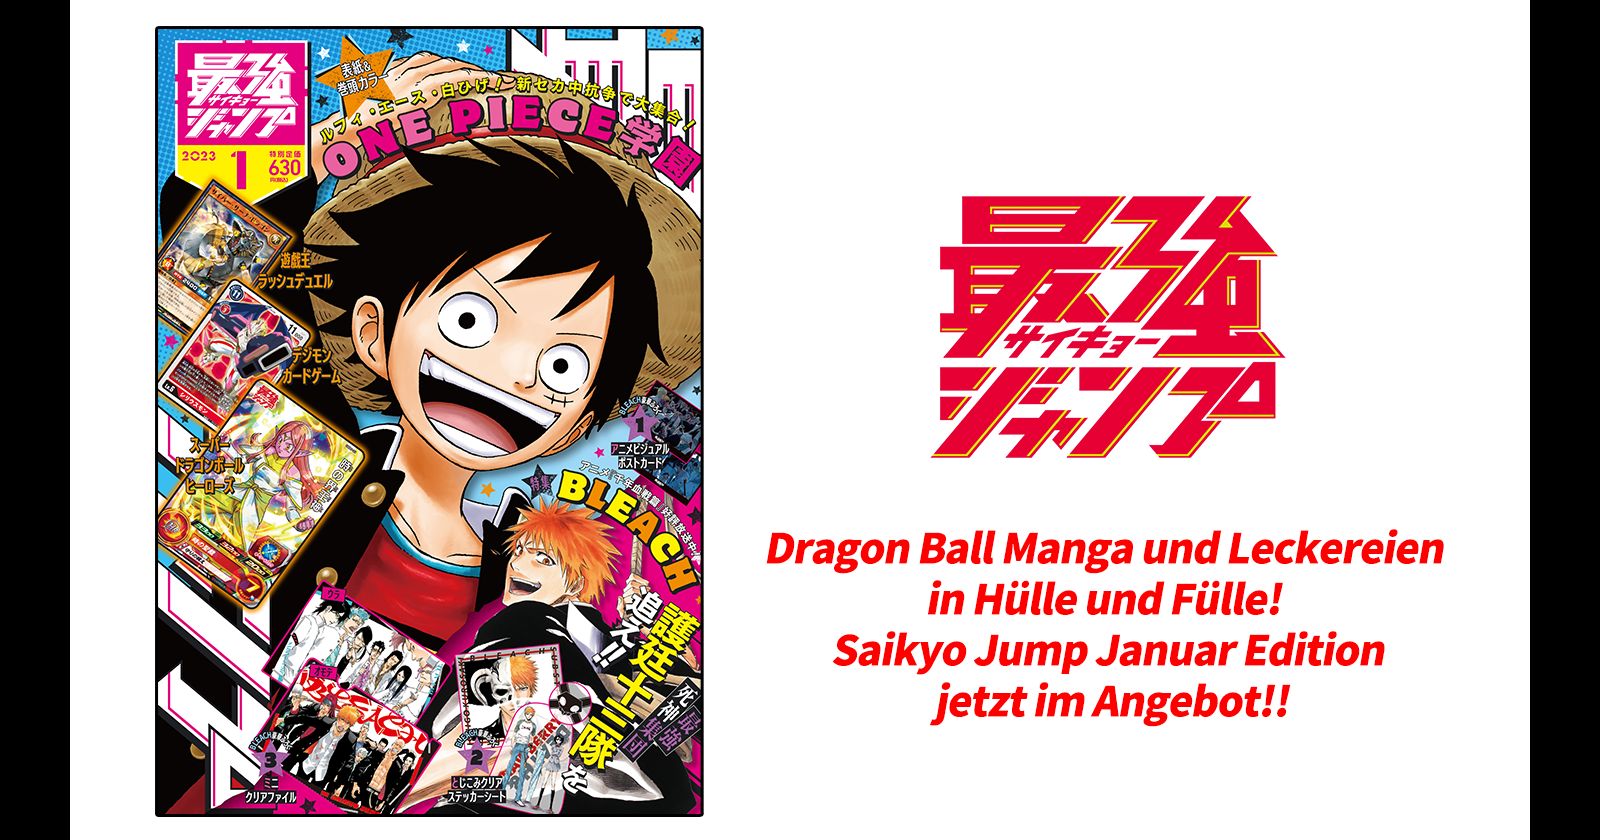 Die Januar-Sonderausgabe von Saikyo Jump, die derzeit im Verkauf ist, ist voll mit „Dragon Ball“-Fell und Manga!